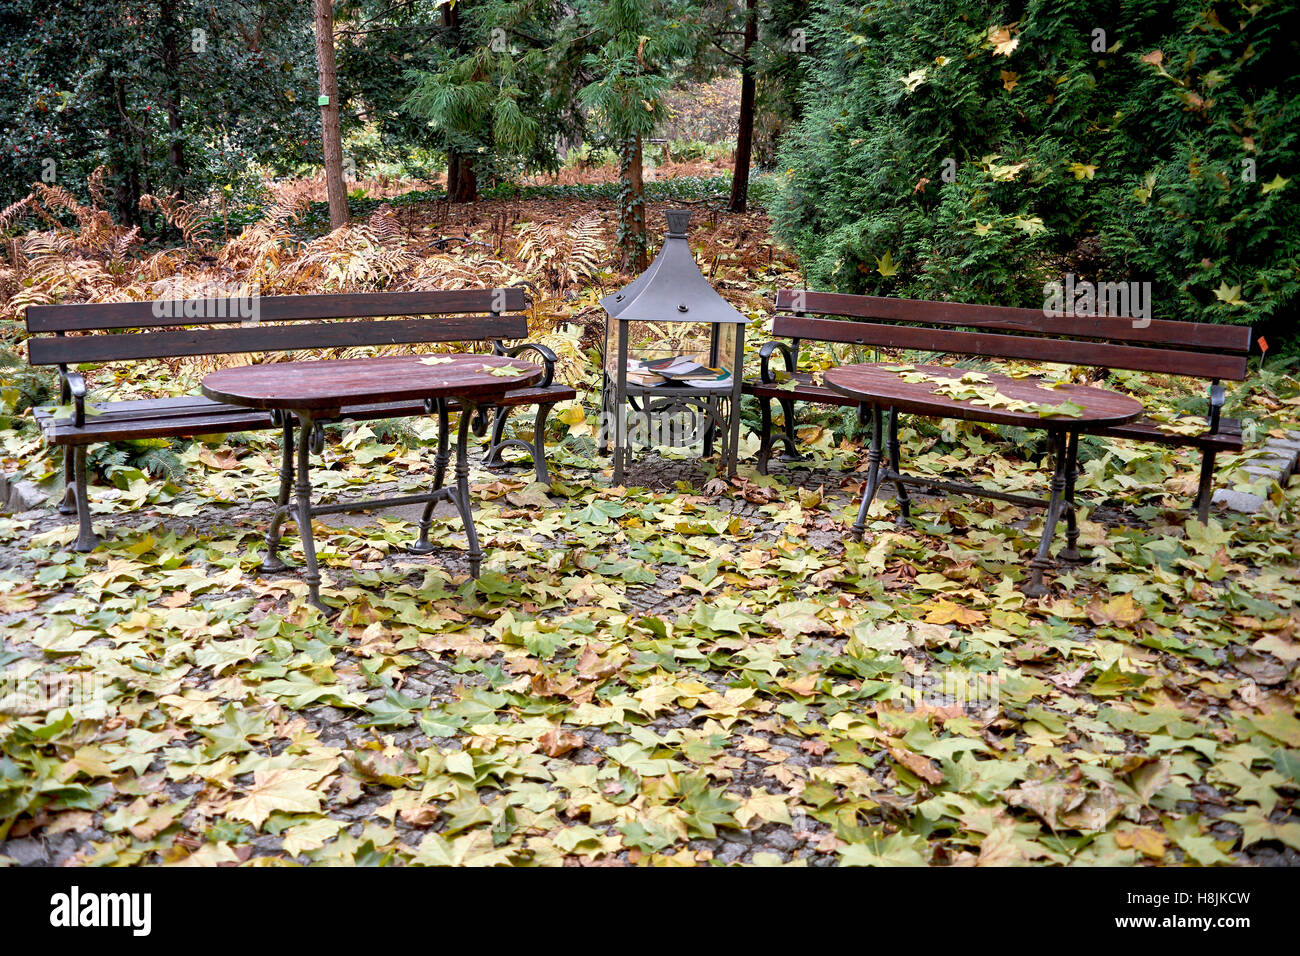 Empty benches among fallen autumn leaves nostalgia Stock Photo